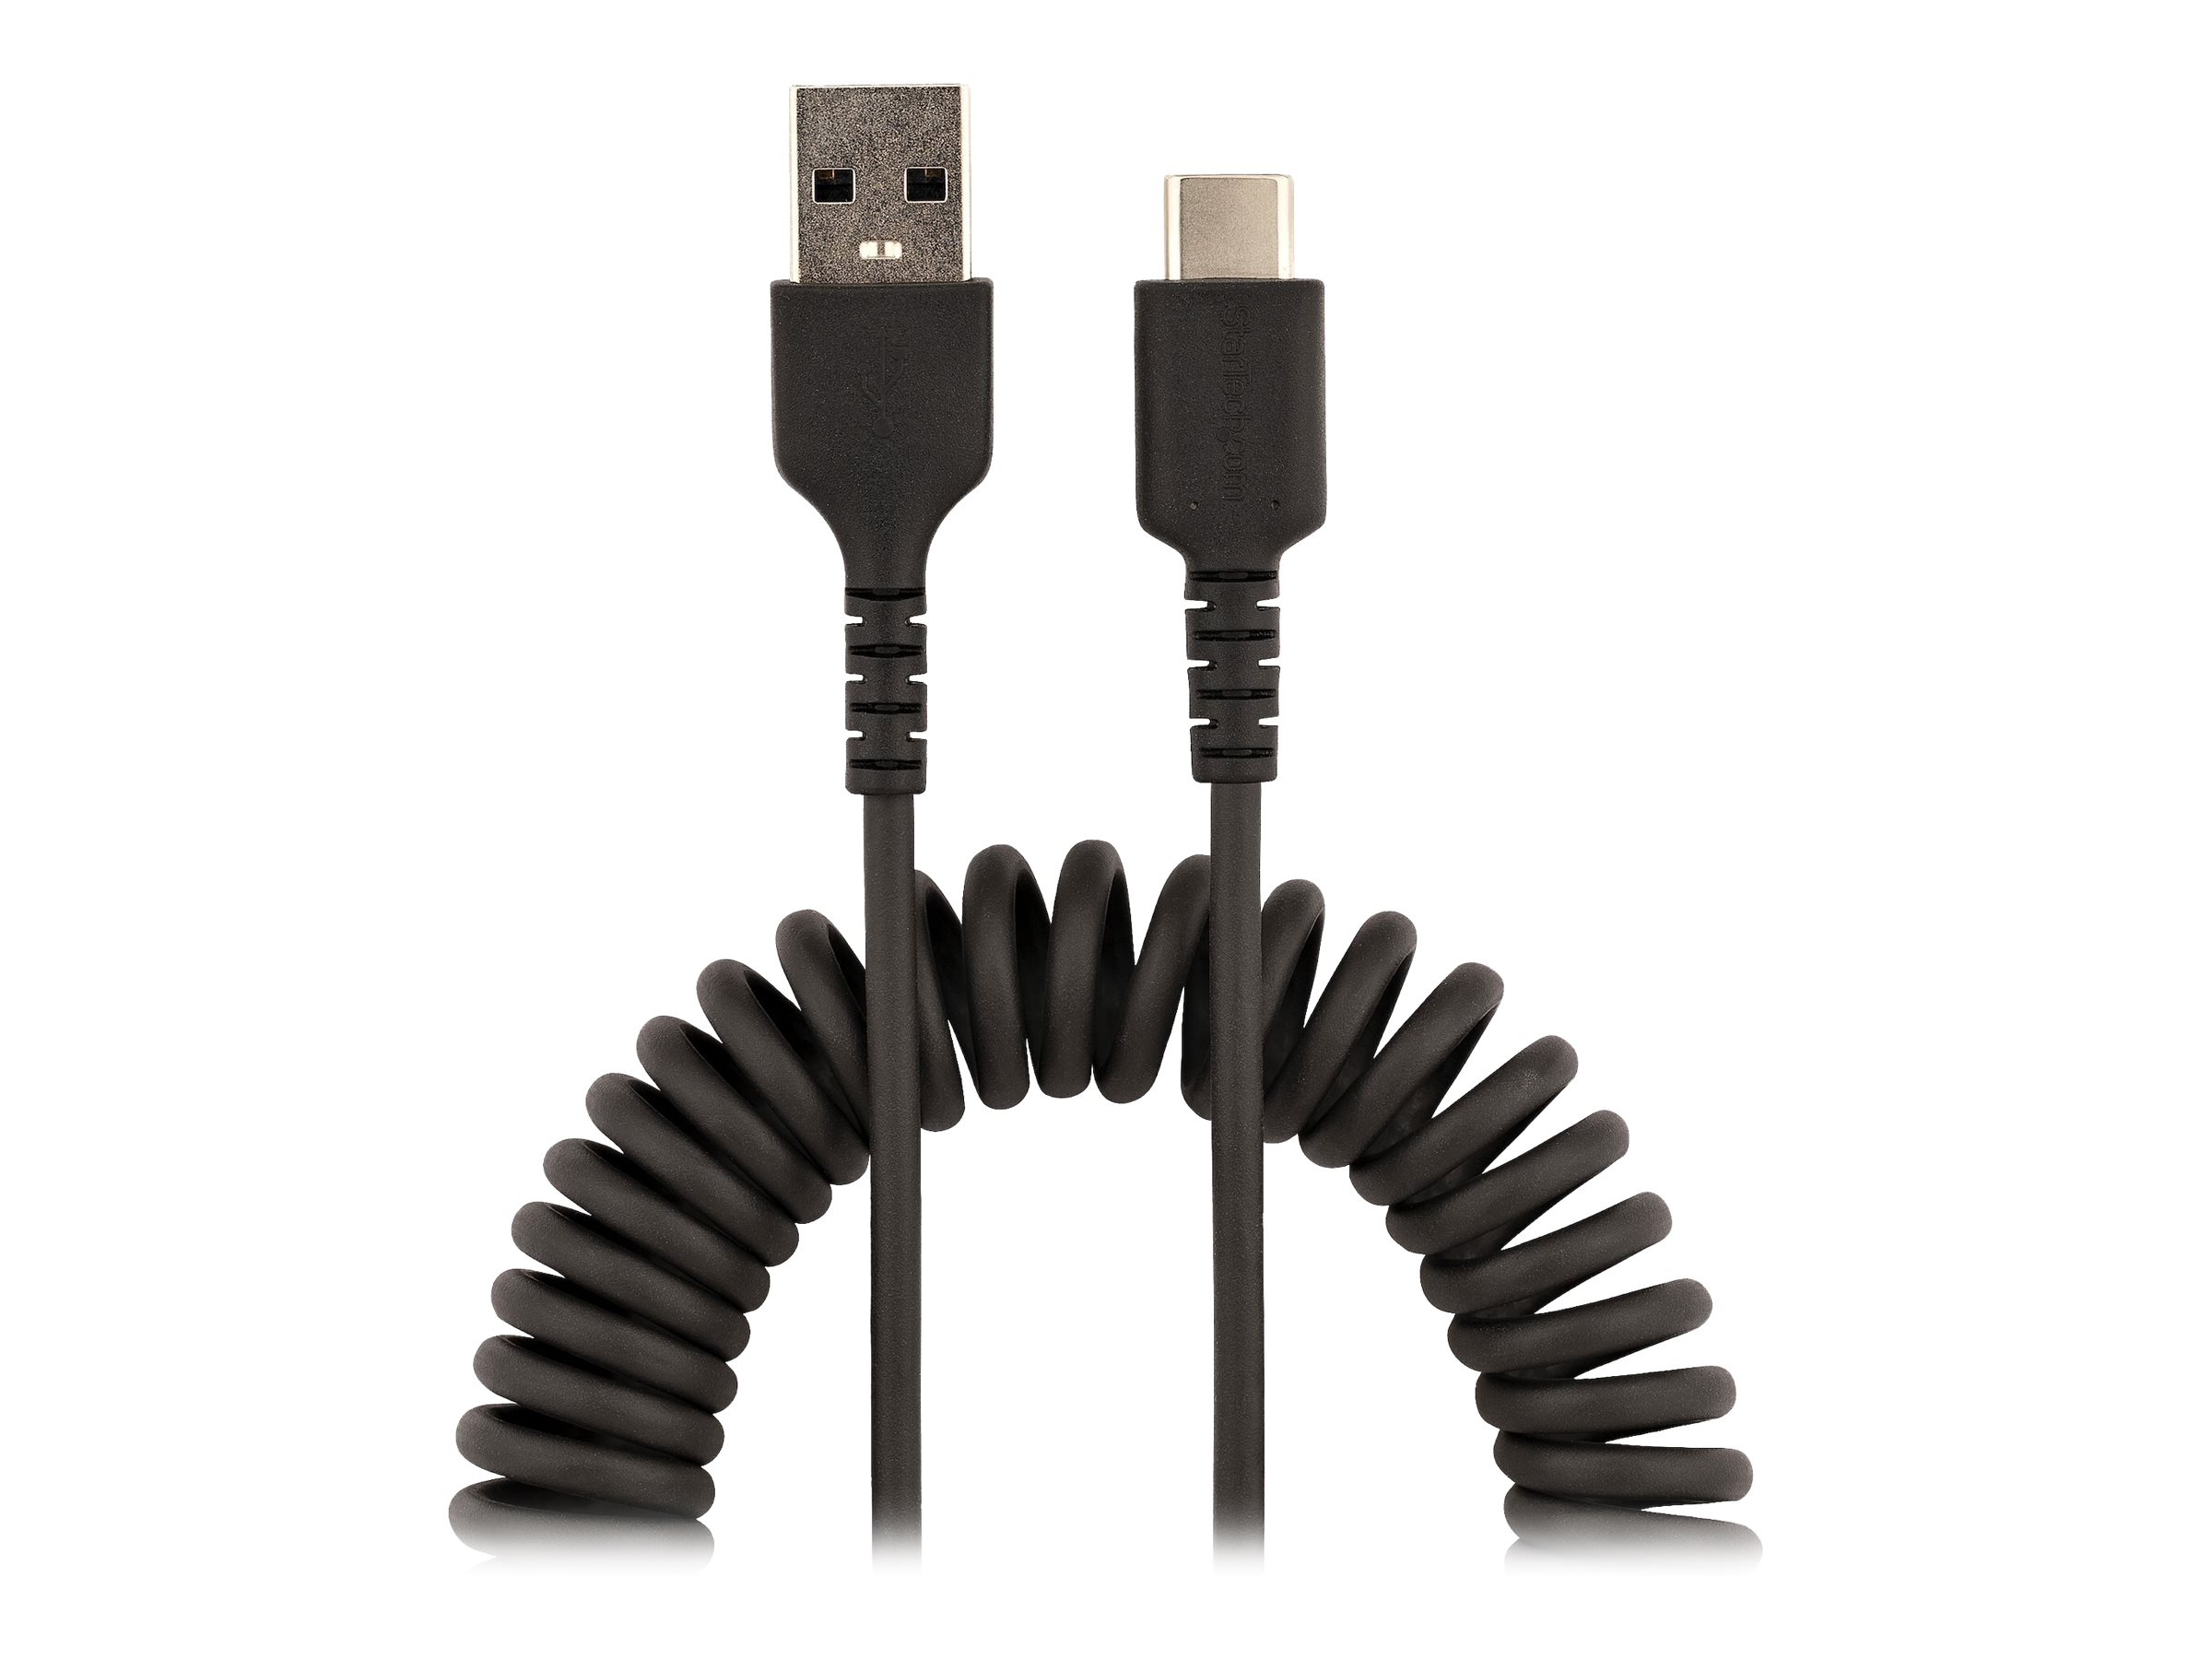 StarTech.com 50cm USB-A to USB-C cable